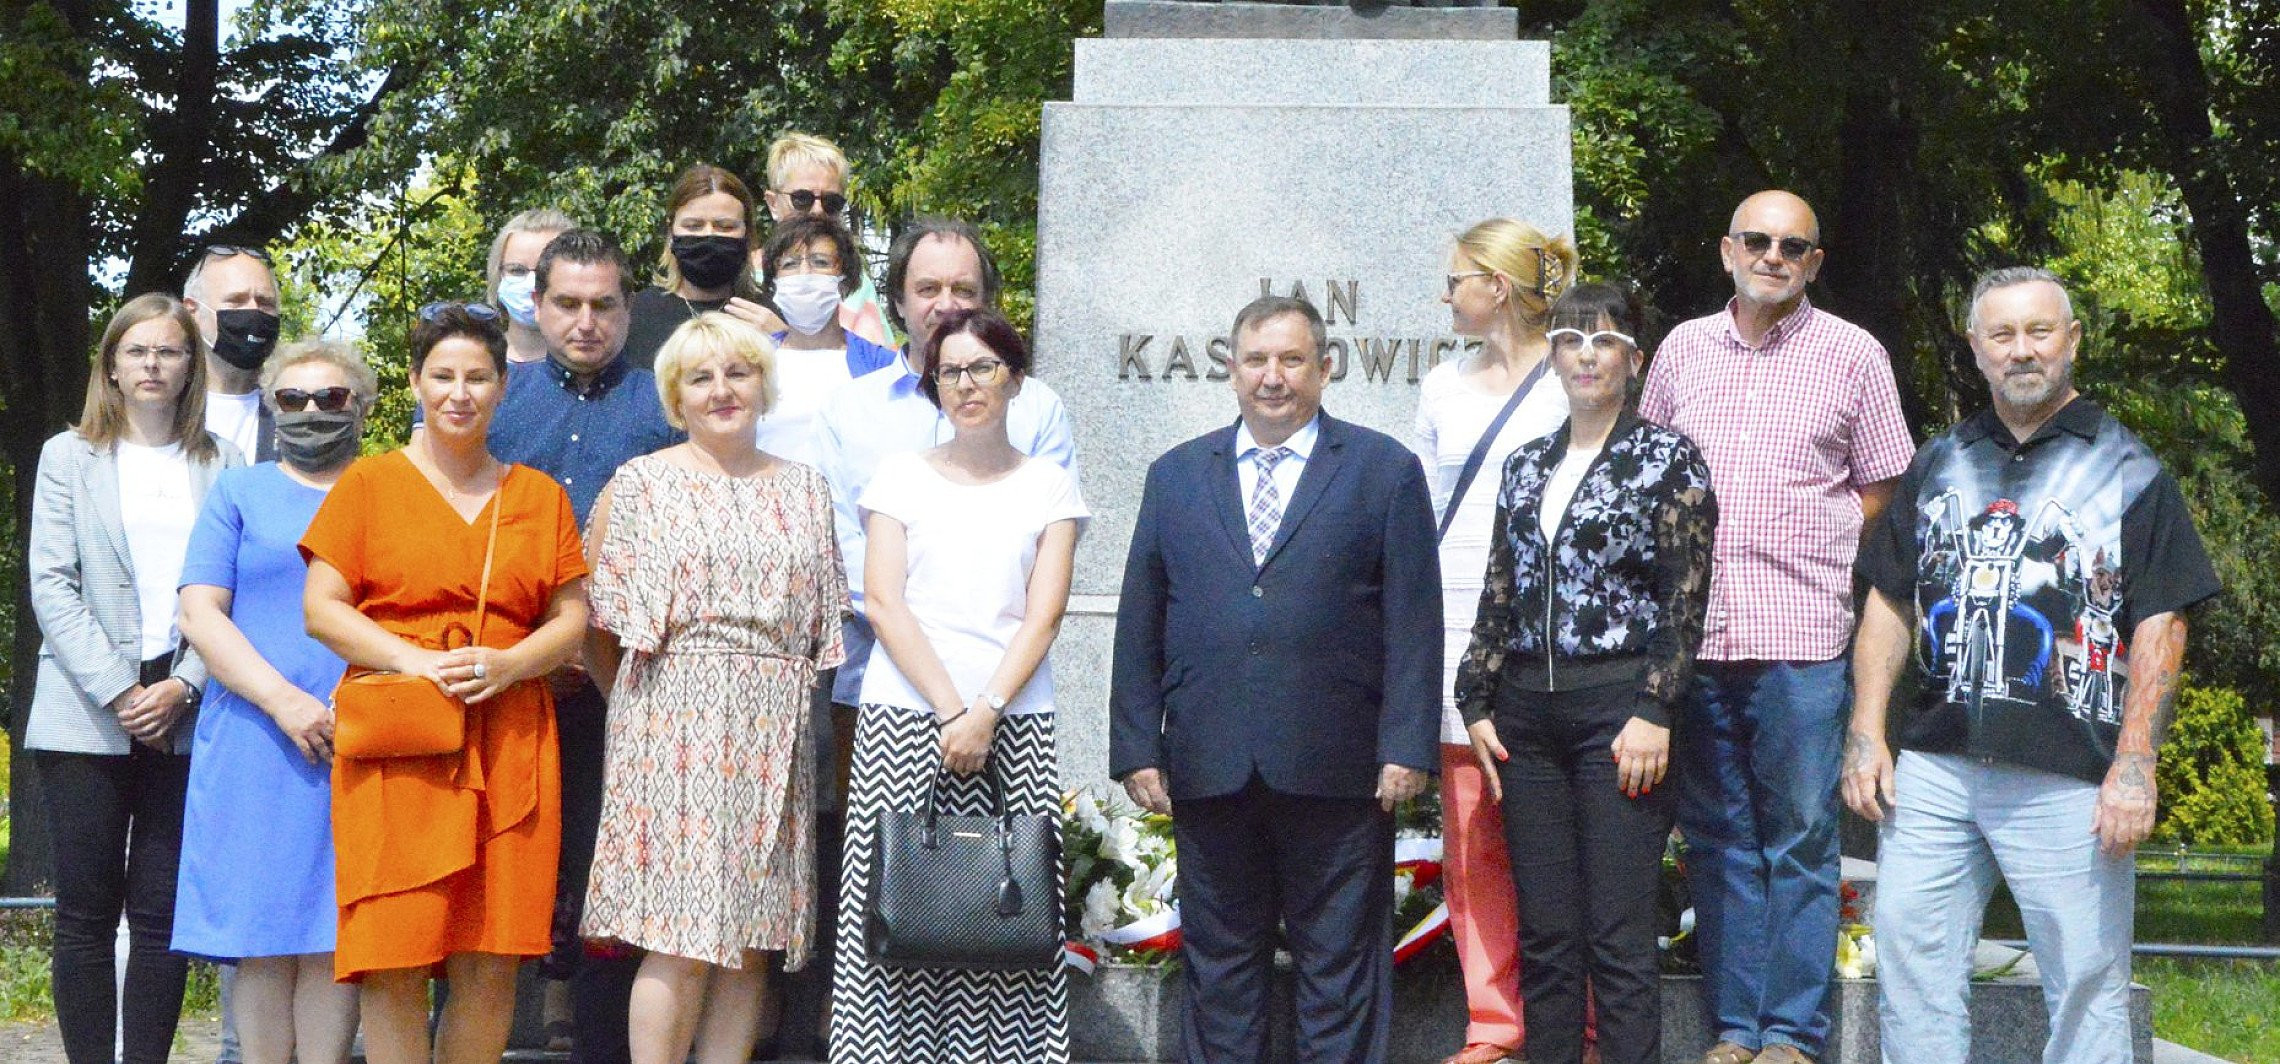 Inowrocław - Upamiętnili rocznicę śmierci piewcy Kujaw